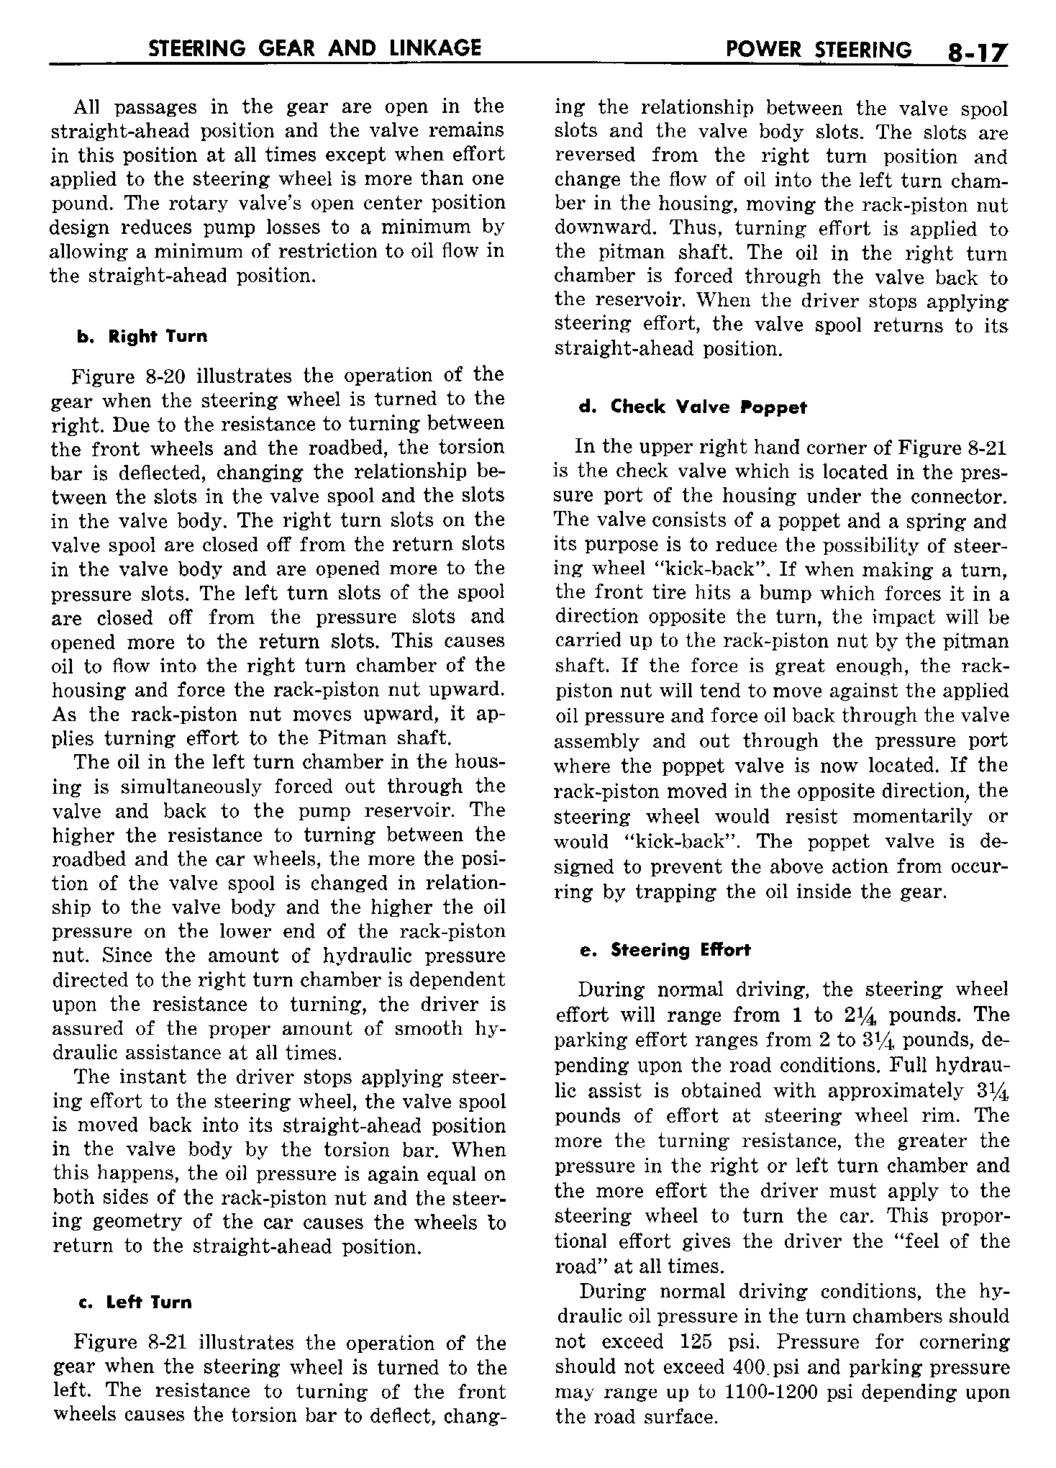 n_09 1960 Buick Shop Manual - Steering-017-017.jpg